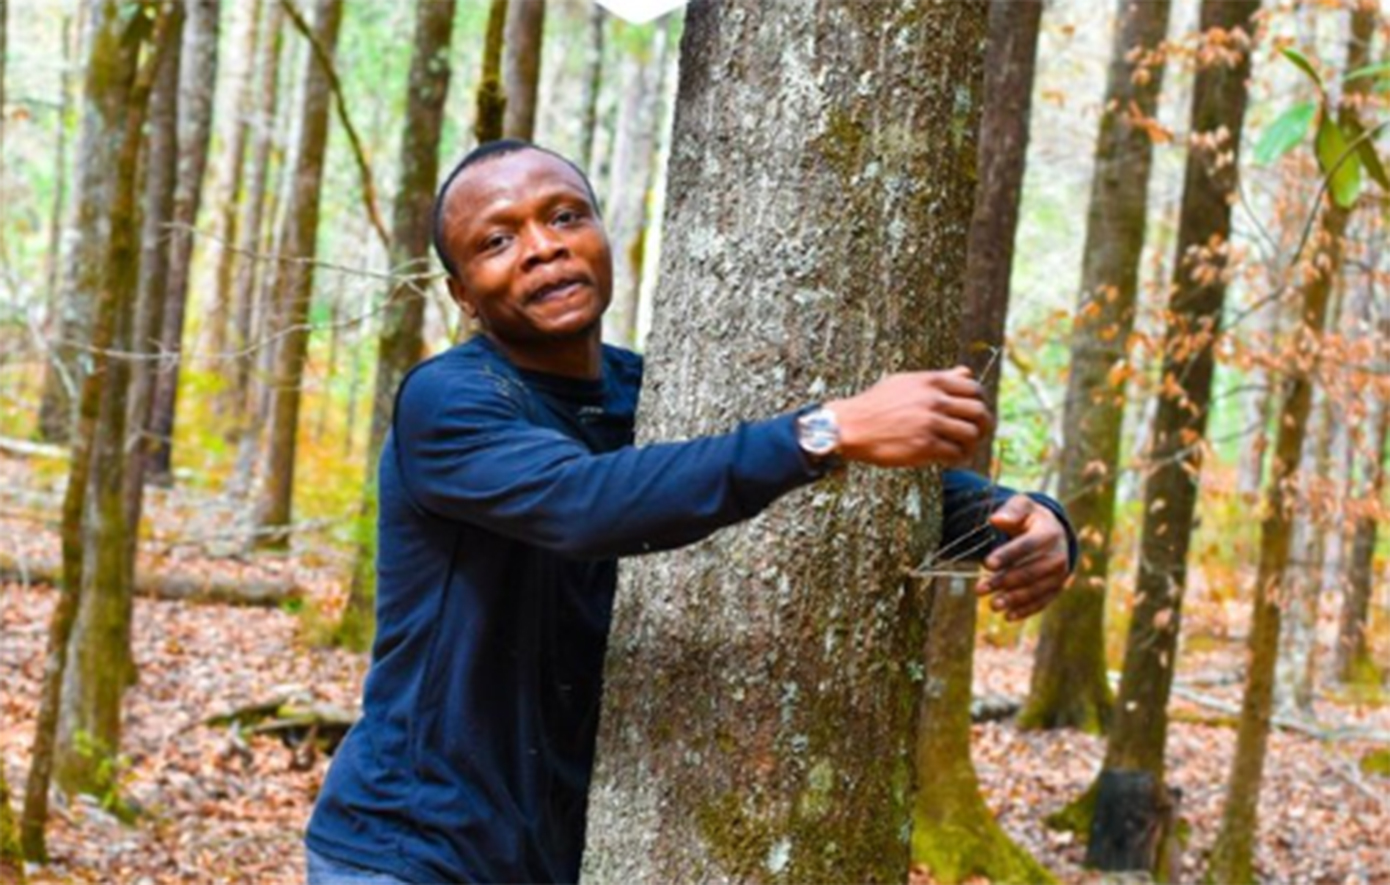 Αγκάλιασε σε 1 ώρα 1.123 δέντρα για να σπάσει το ρεκόρ Γκίνες